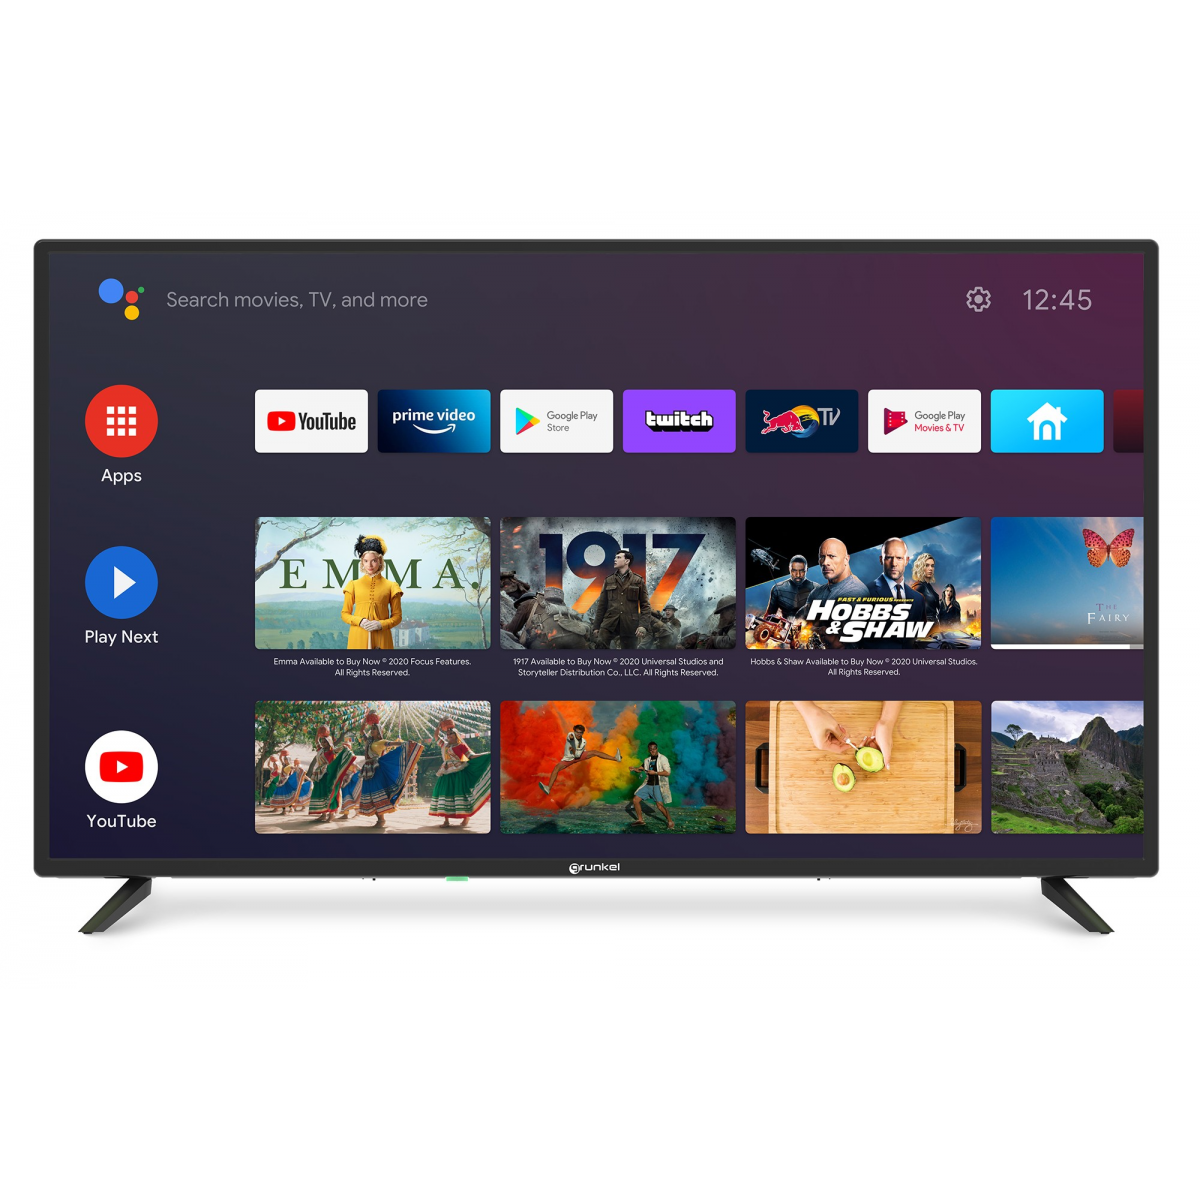 Android TV Engel EN1060K 4K + TDT DVB-T2 - Mundo Consumible Tienda  Informática Juguetería Artes Graficas